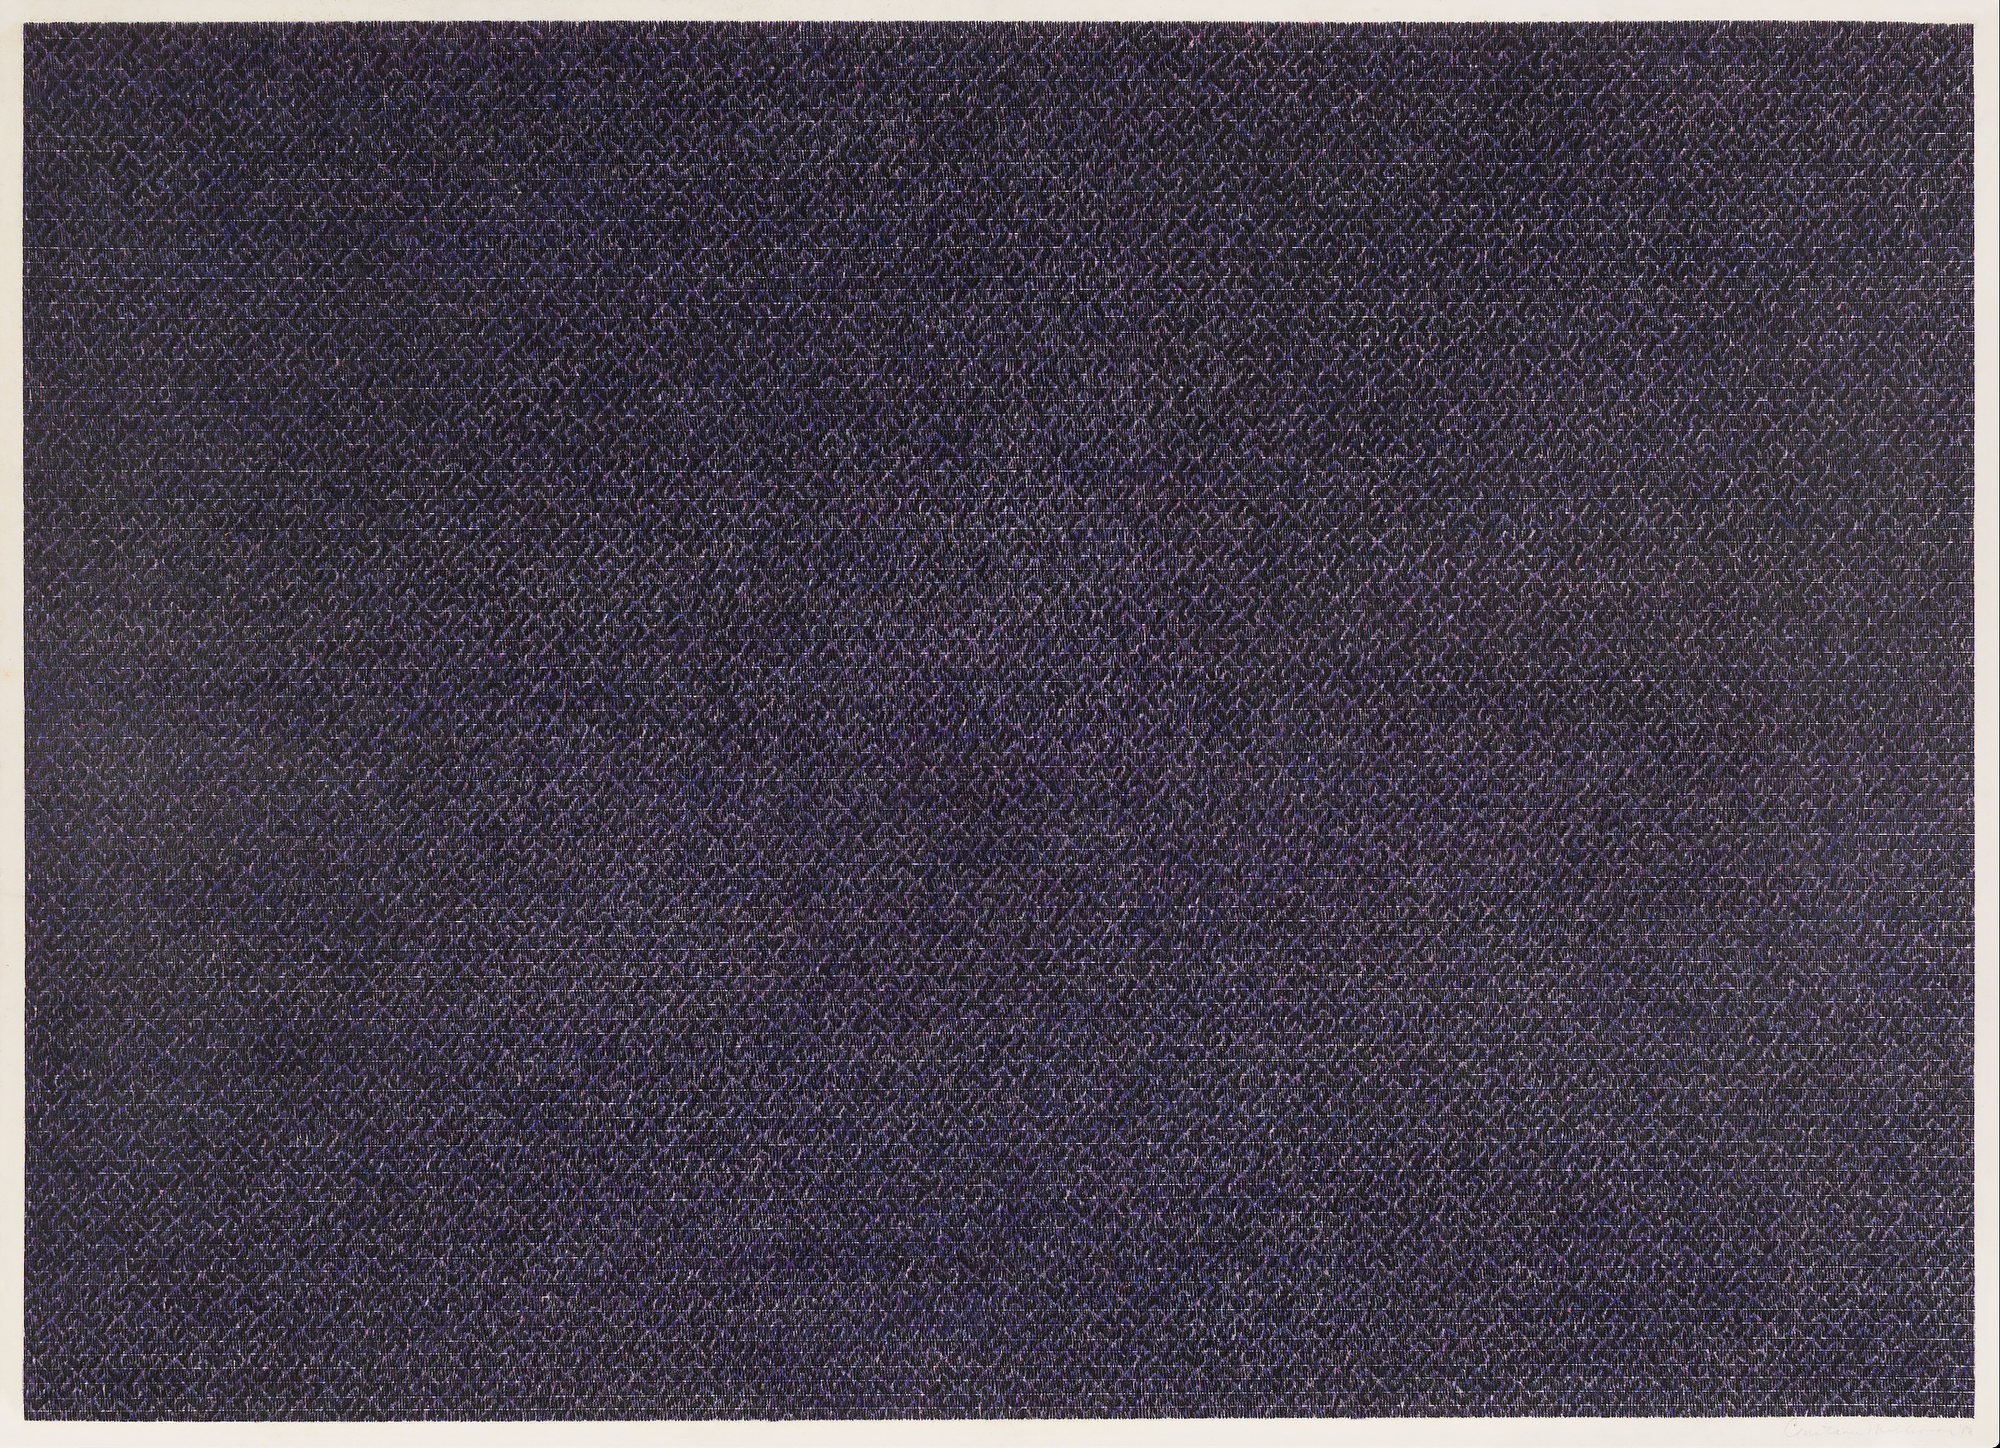 CONSTANCE MALLINSON - Sans titre #11 - crayon de couleur sur papier - 26 x 36 in.